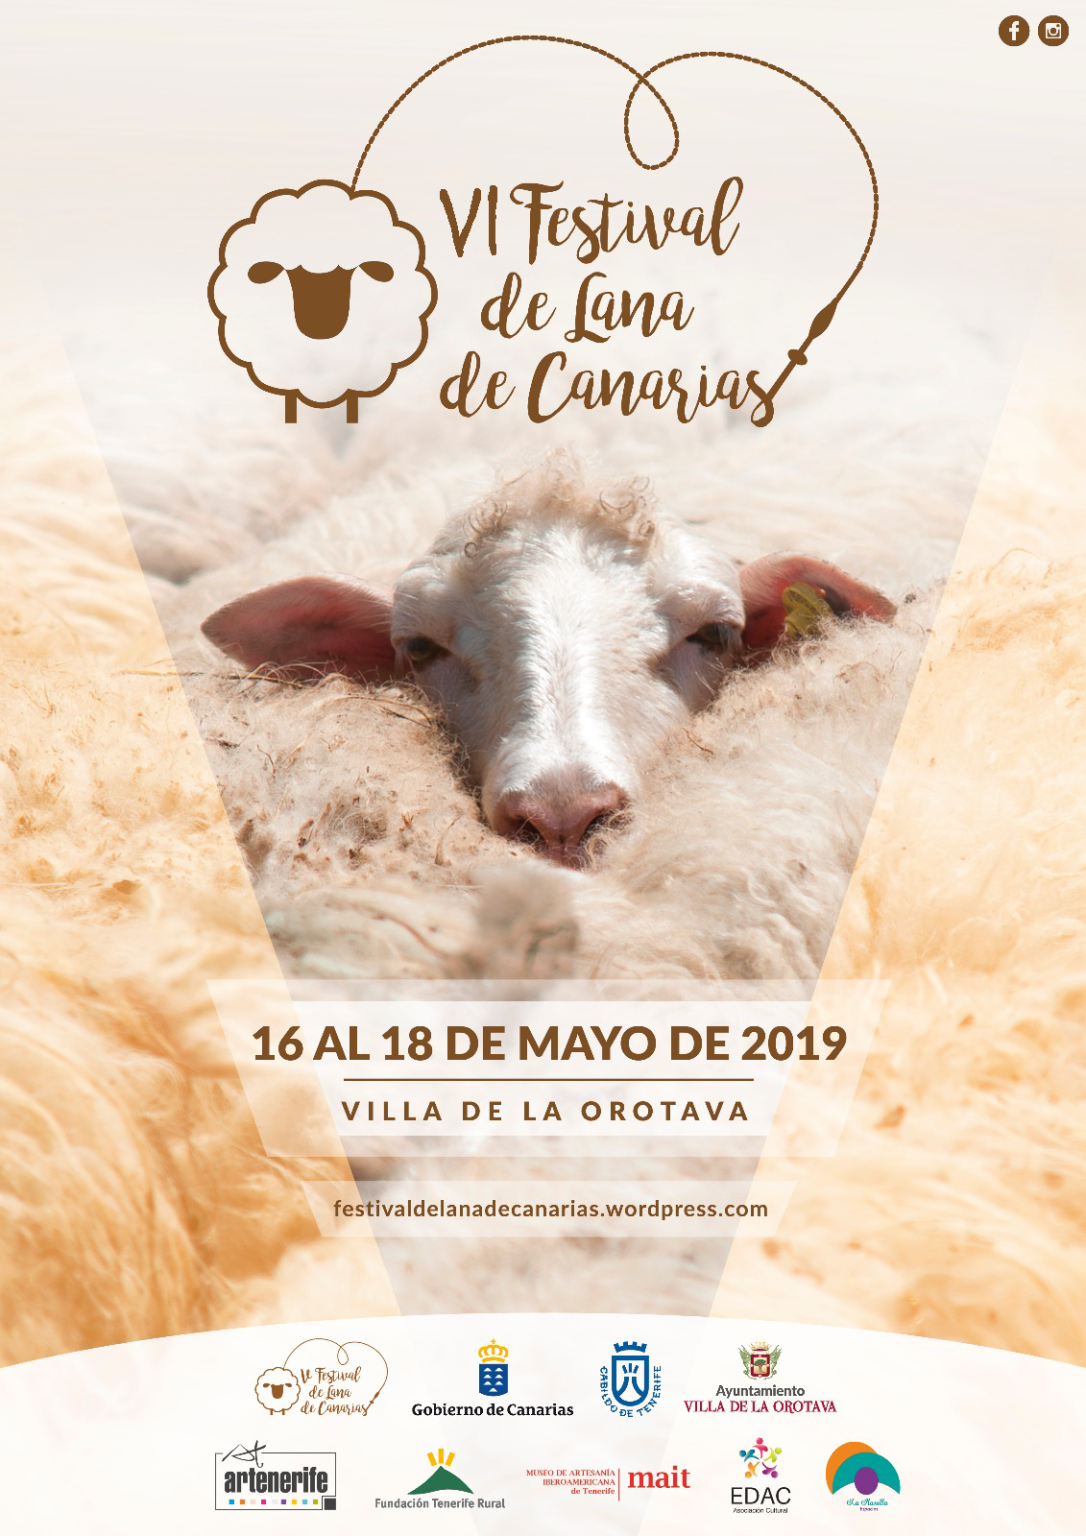 La Orotava acoge el IV Festival de la Lana de Canarias los días 17 y 18 de mayo